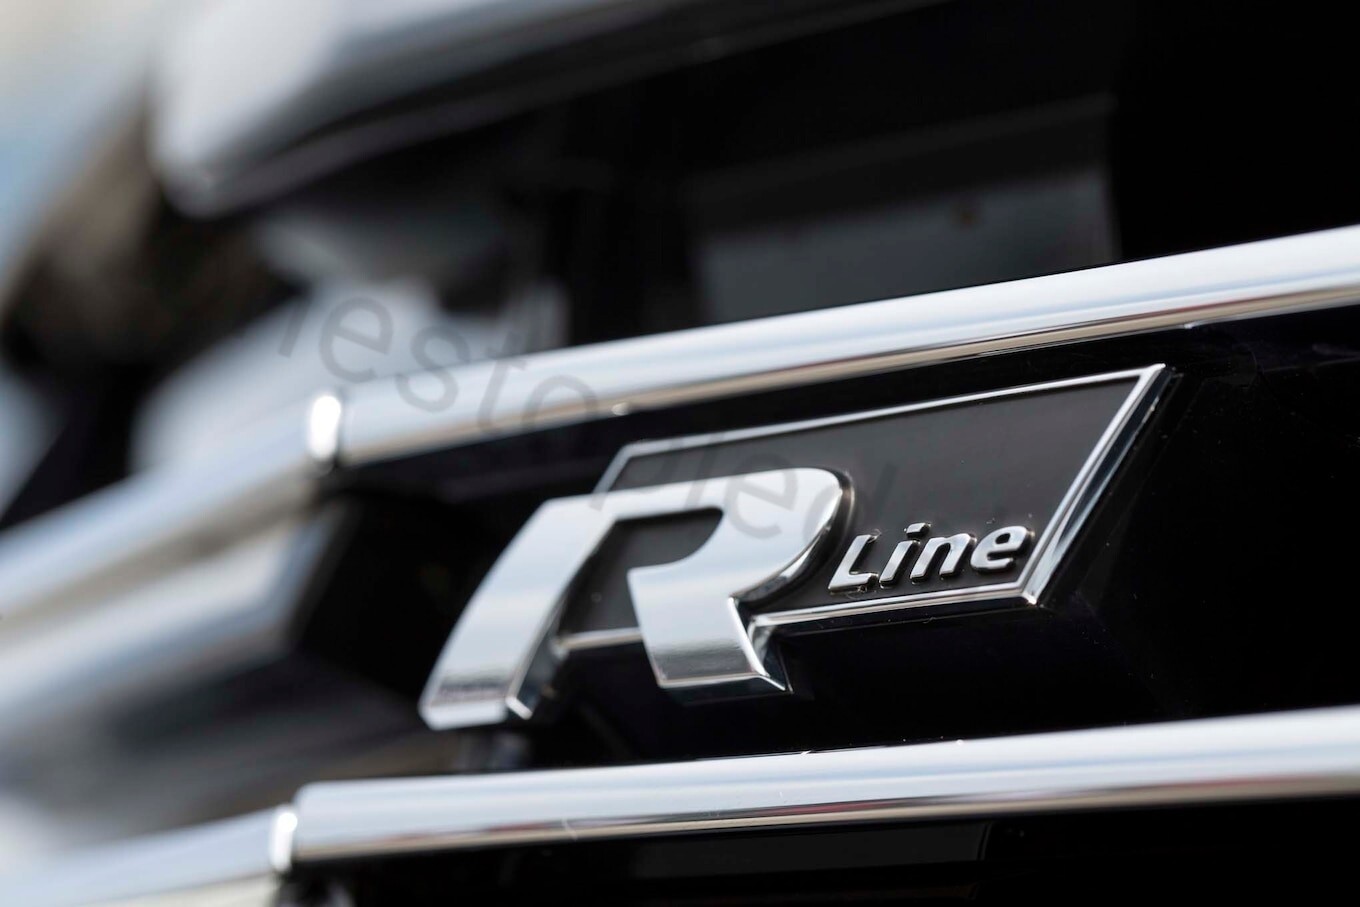 R R-Line RLine volkswagen black silver front grill grille badge emblem